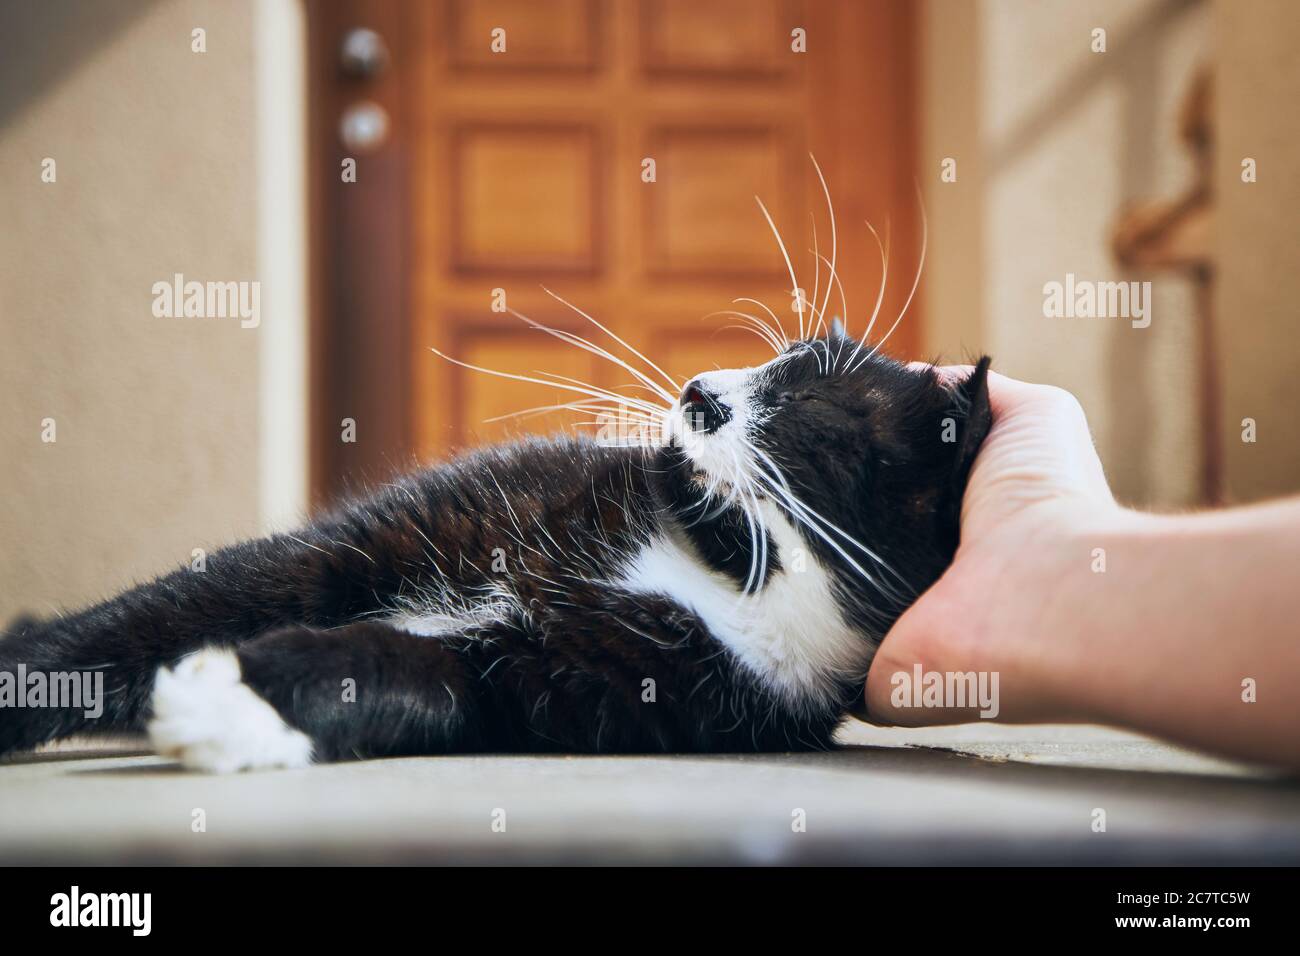 Häusliches Leben mit Haustier. Hand des Mannes streichelte Katze vor dem Haus. Stockfoto